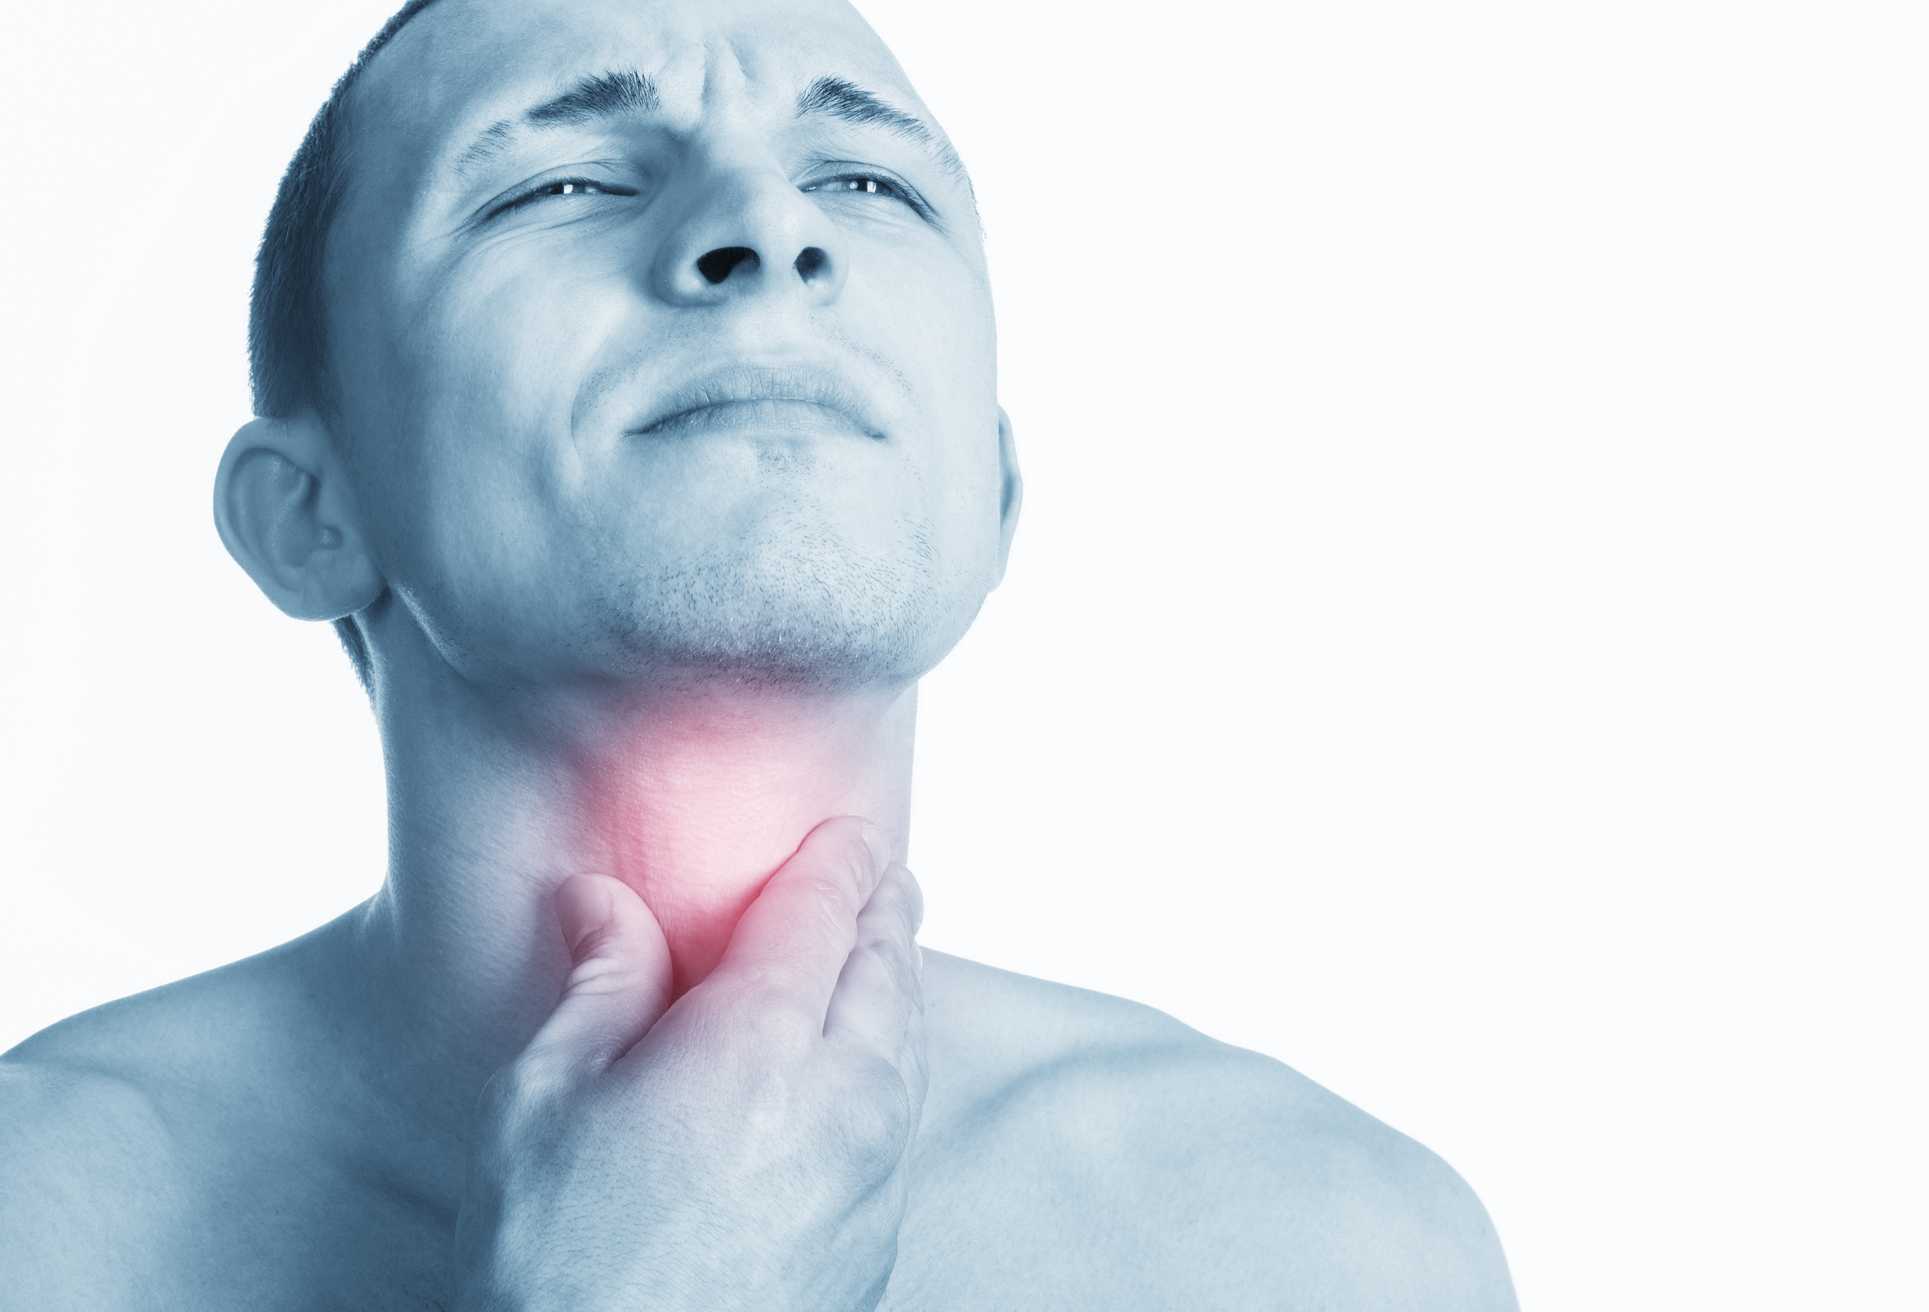 El segundo síntoma más reportado fue el dolor de garganta (iStock)